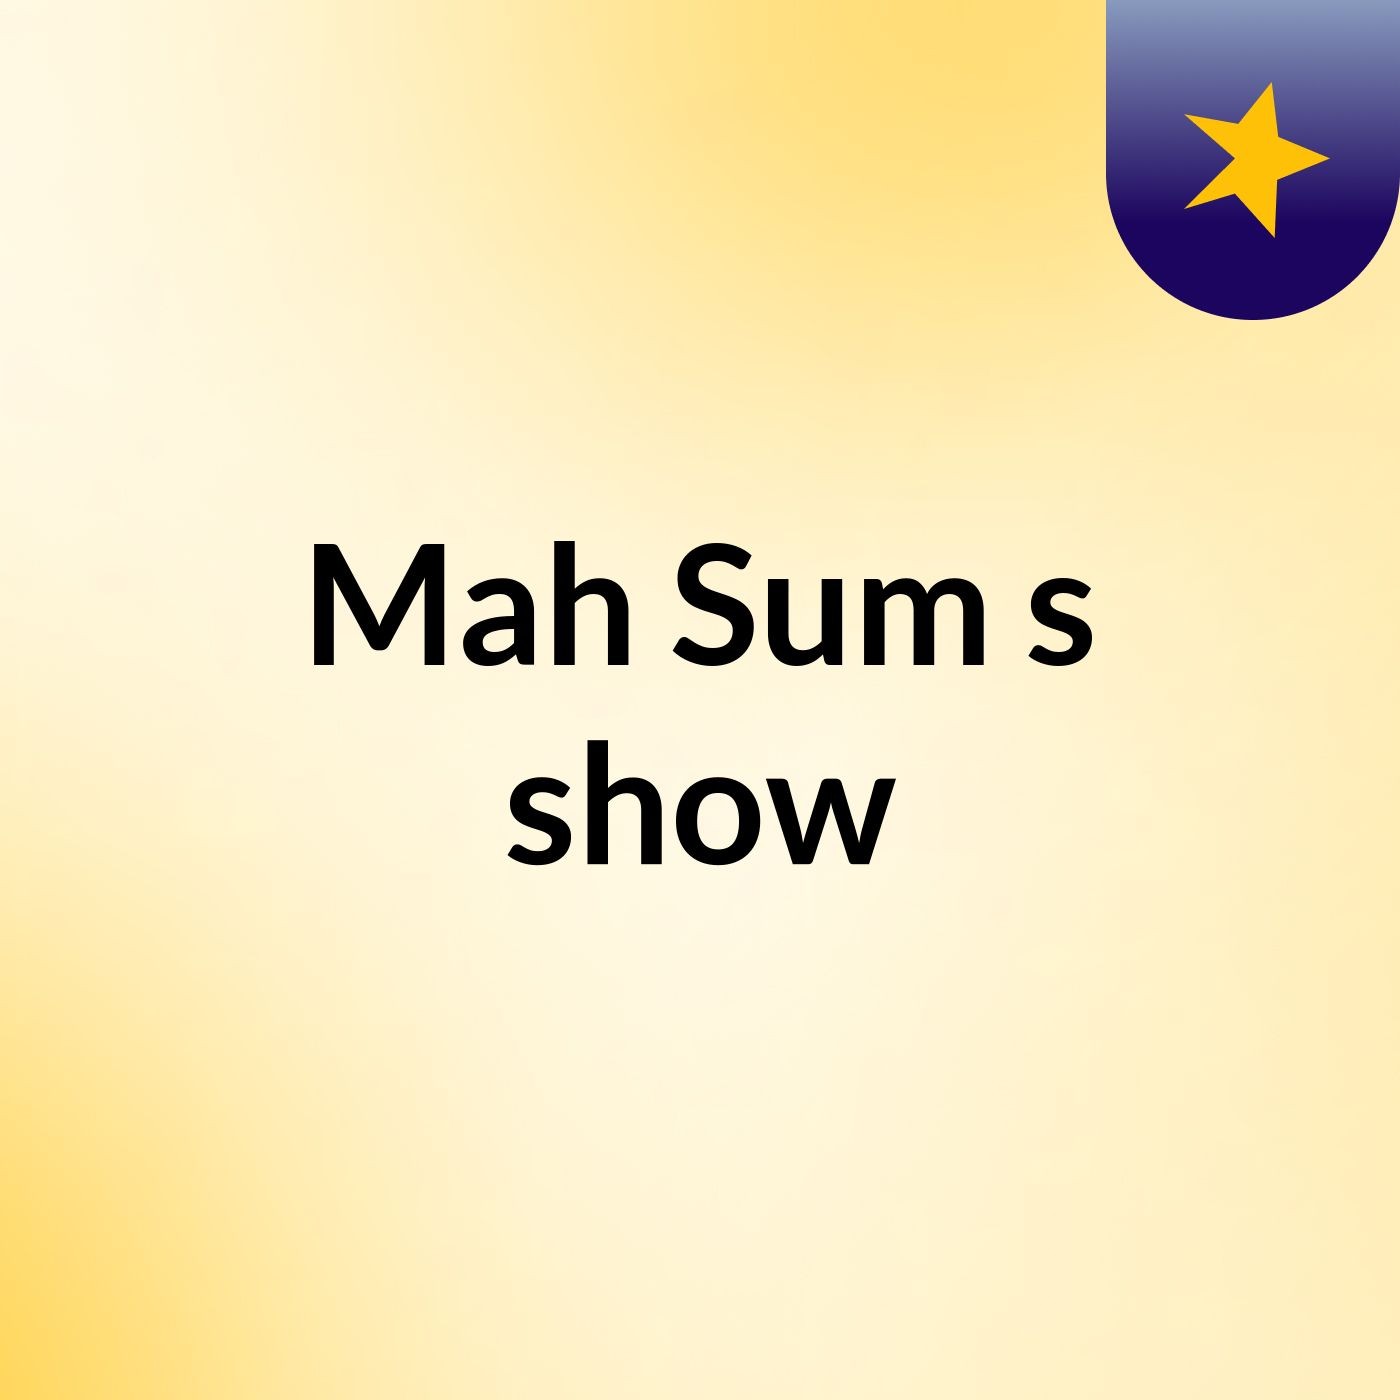 Mah Sum's show